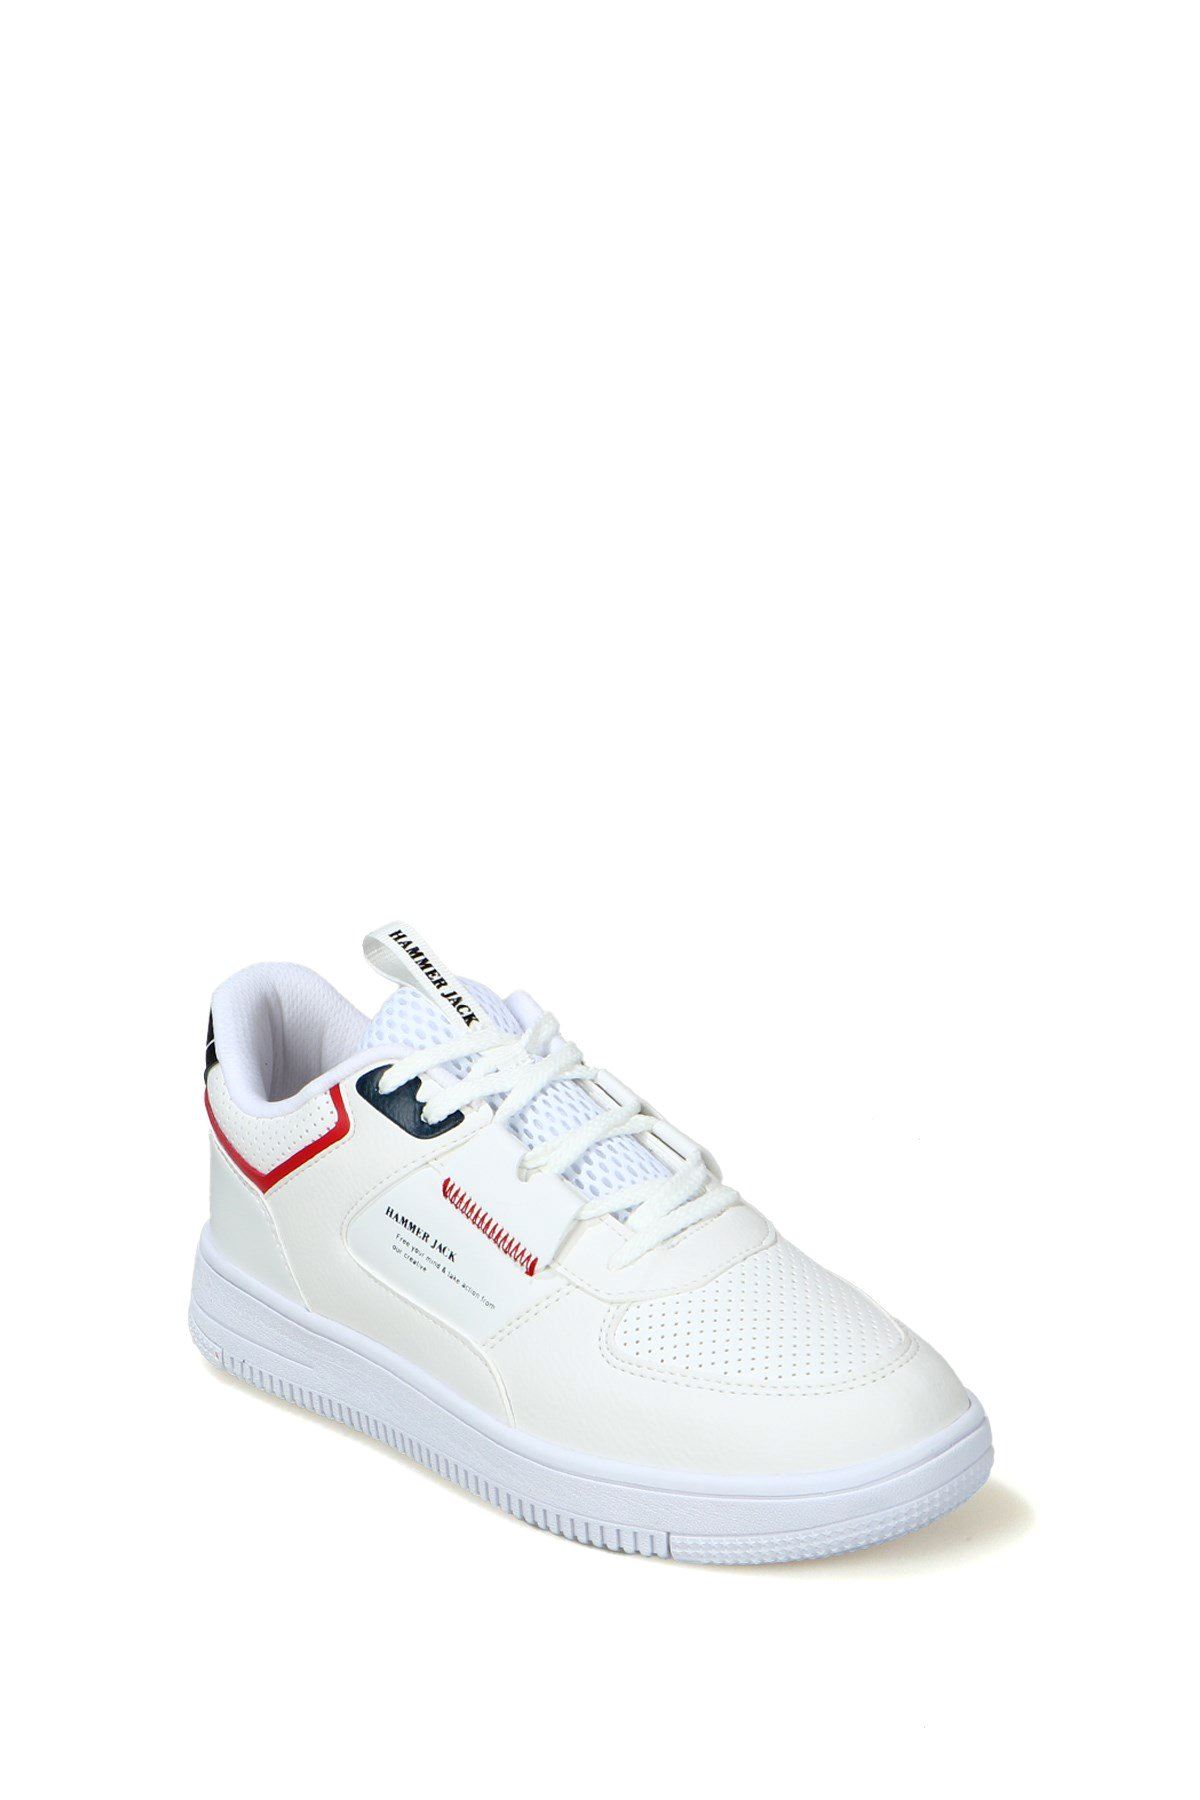 Jarmilla M Erkek Beyaz Spor Ayakkabı - 21225-M